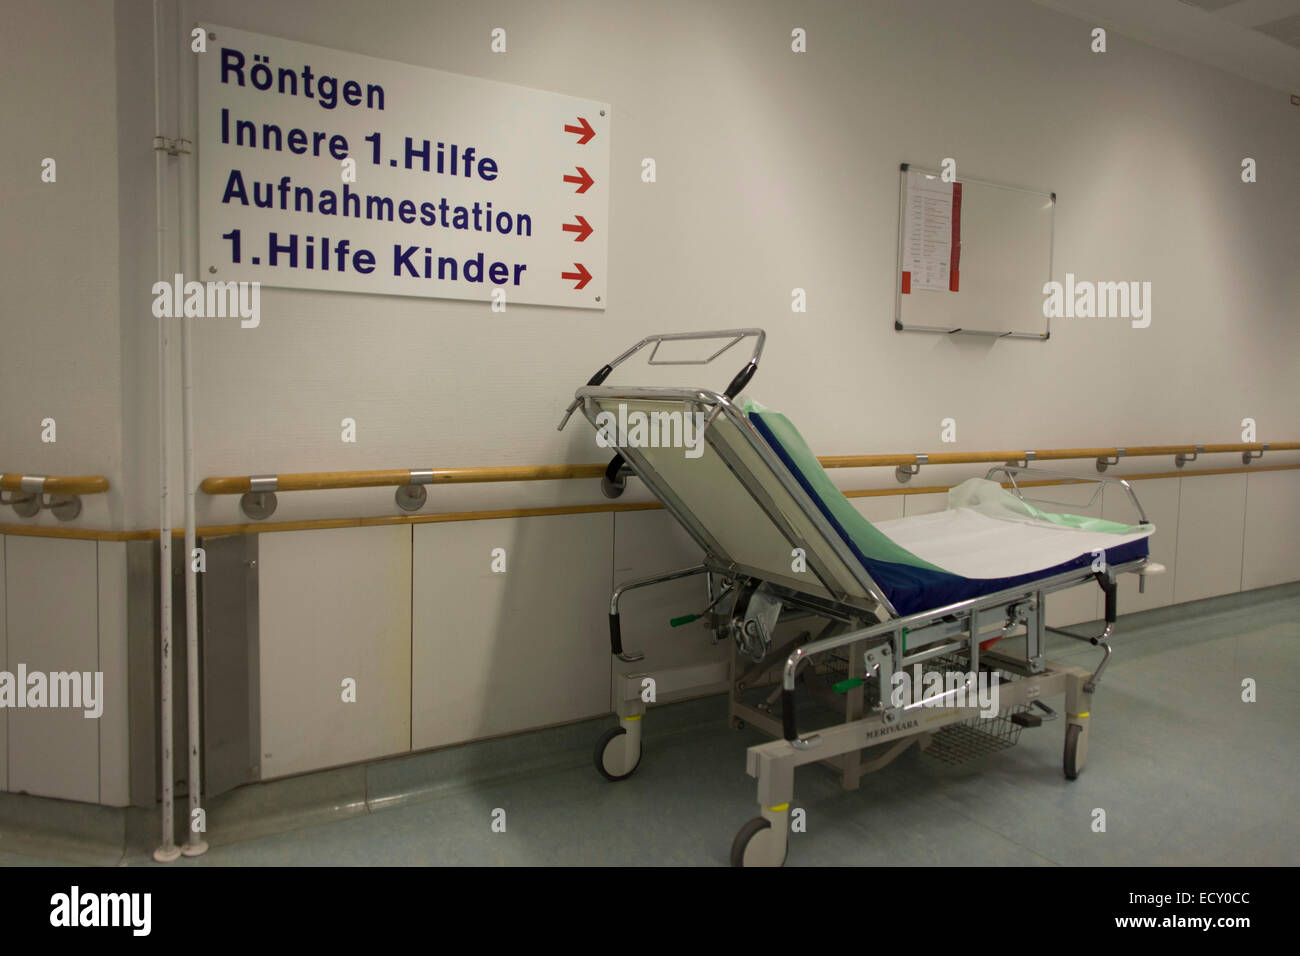 Corridor, Deutsches Rotes Kreuz (DRK - German Red Cross) Hospital, Berlin, Germany. Stock Photo